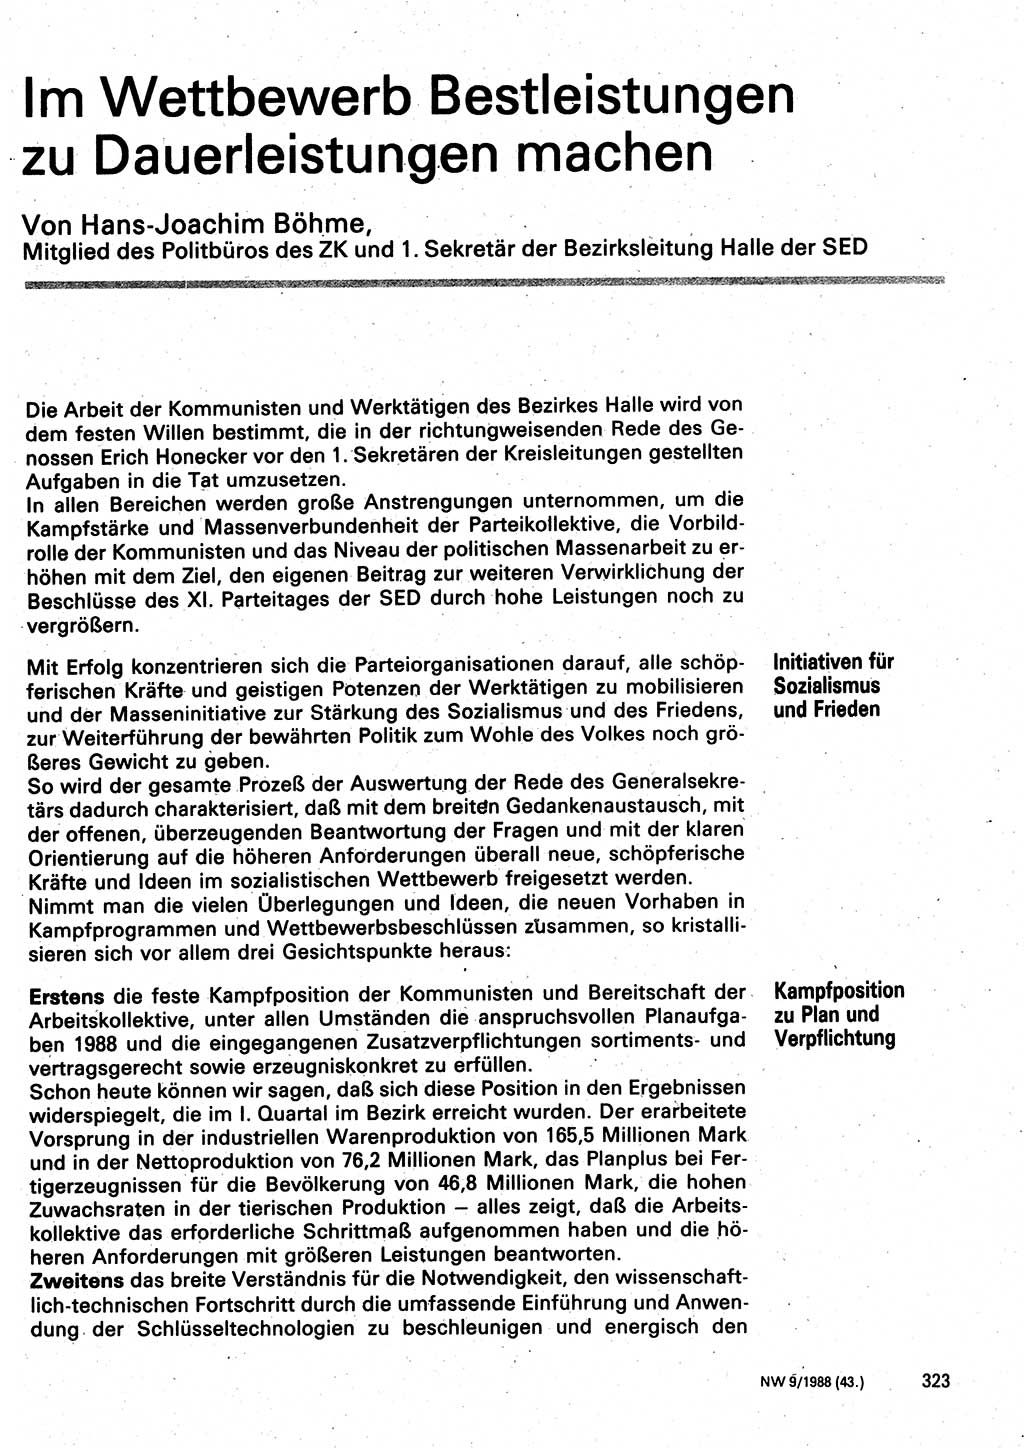 Neuer Weg (NW), Organ des Zentralkomitees (ZK) der SED (Sozialistische Einheitspartei Deutschlands) für Fragen des Parteilebens, 43. Jahrgang [Deutsche Demokratische Republik (DDR)] 1988, Seite 323 (NW ZK SED DDR 1988, S. 323)